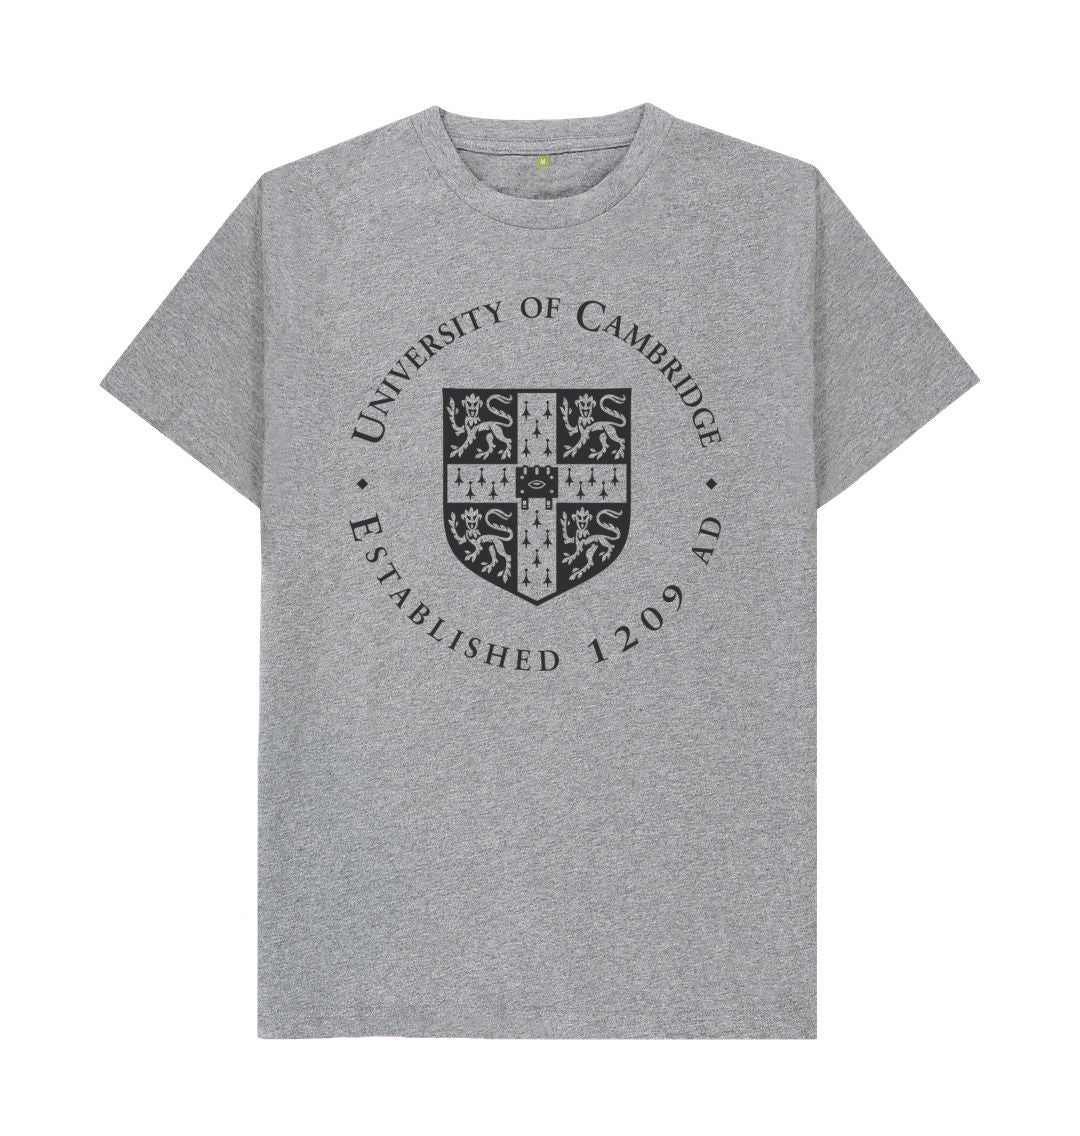 Athletic Grey Men's University of Cambridge Crew Neck Tee